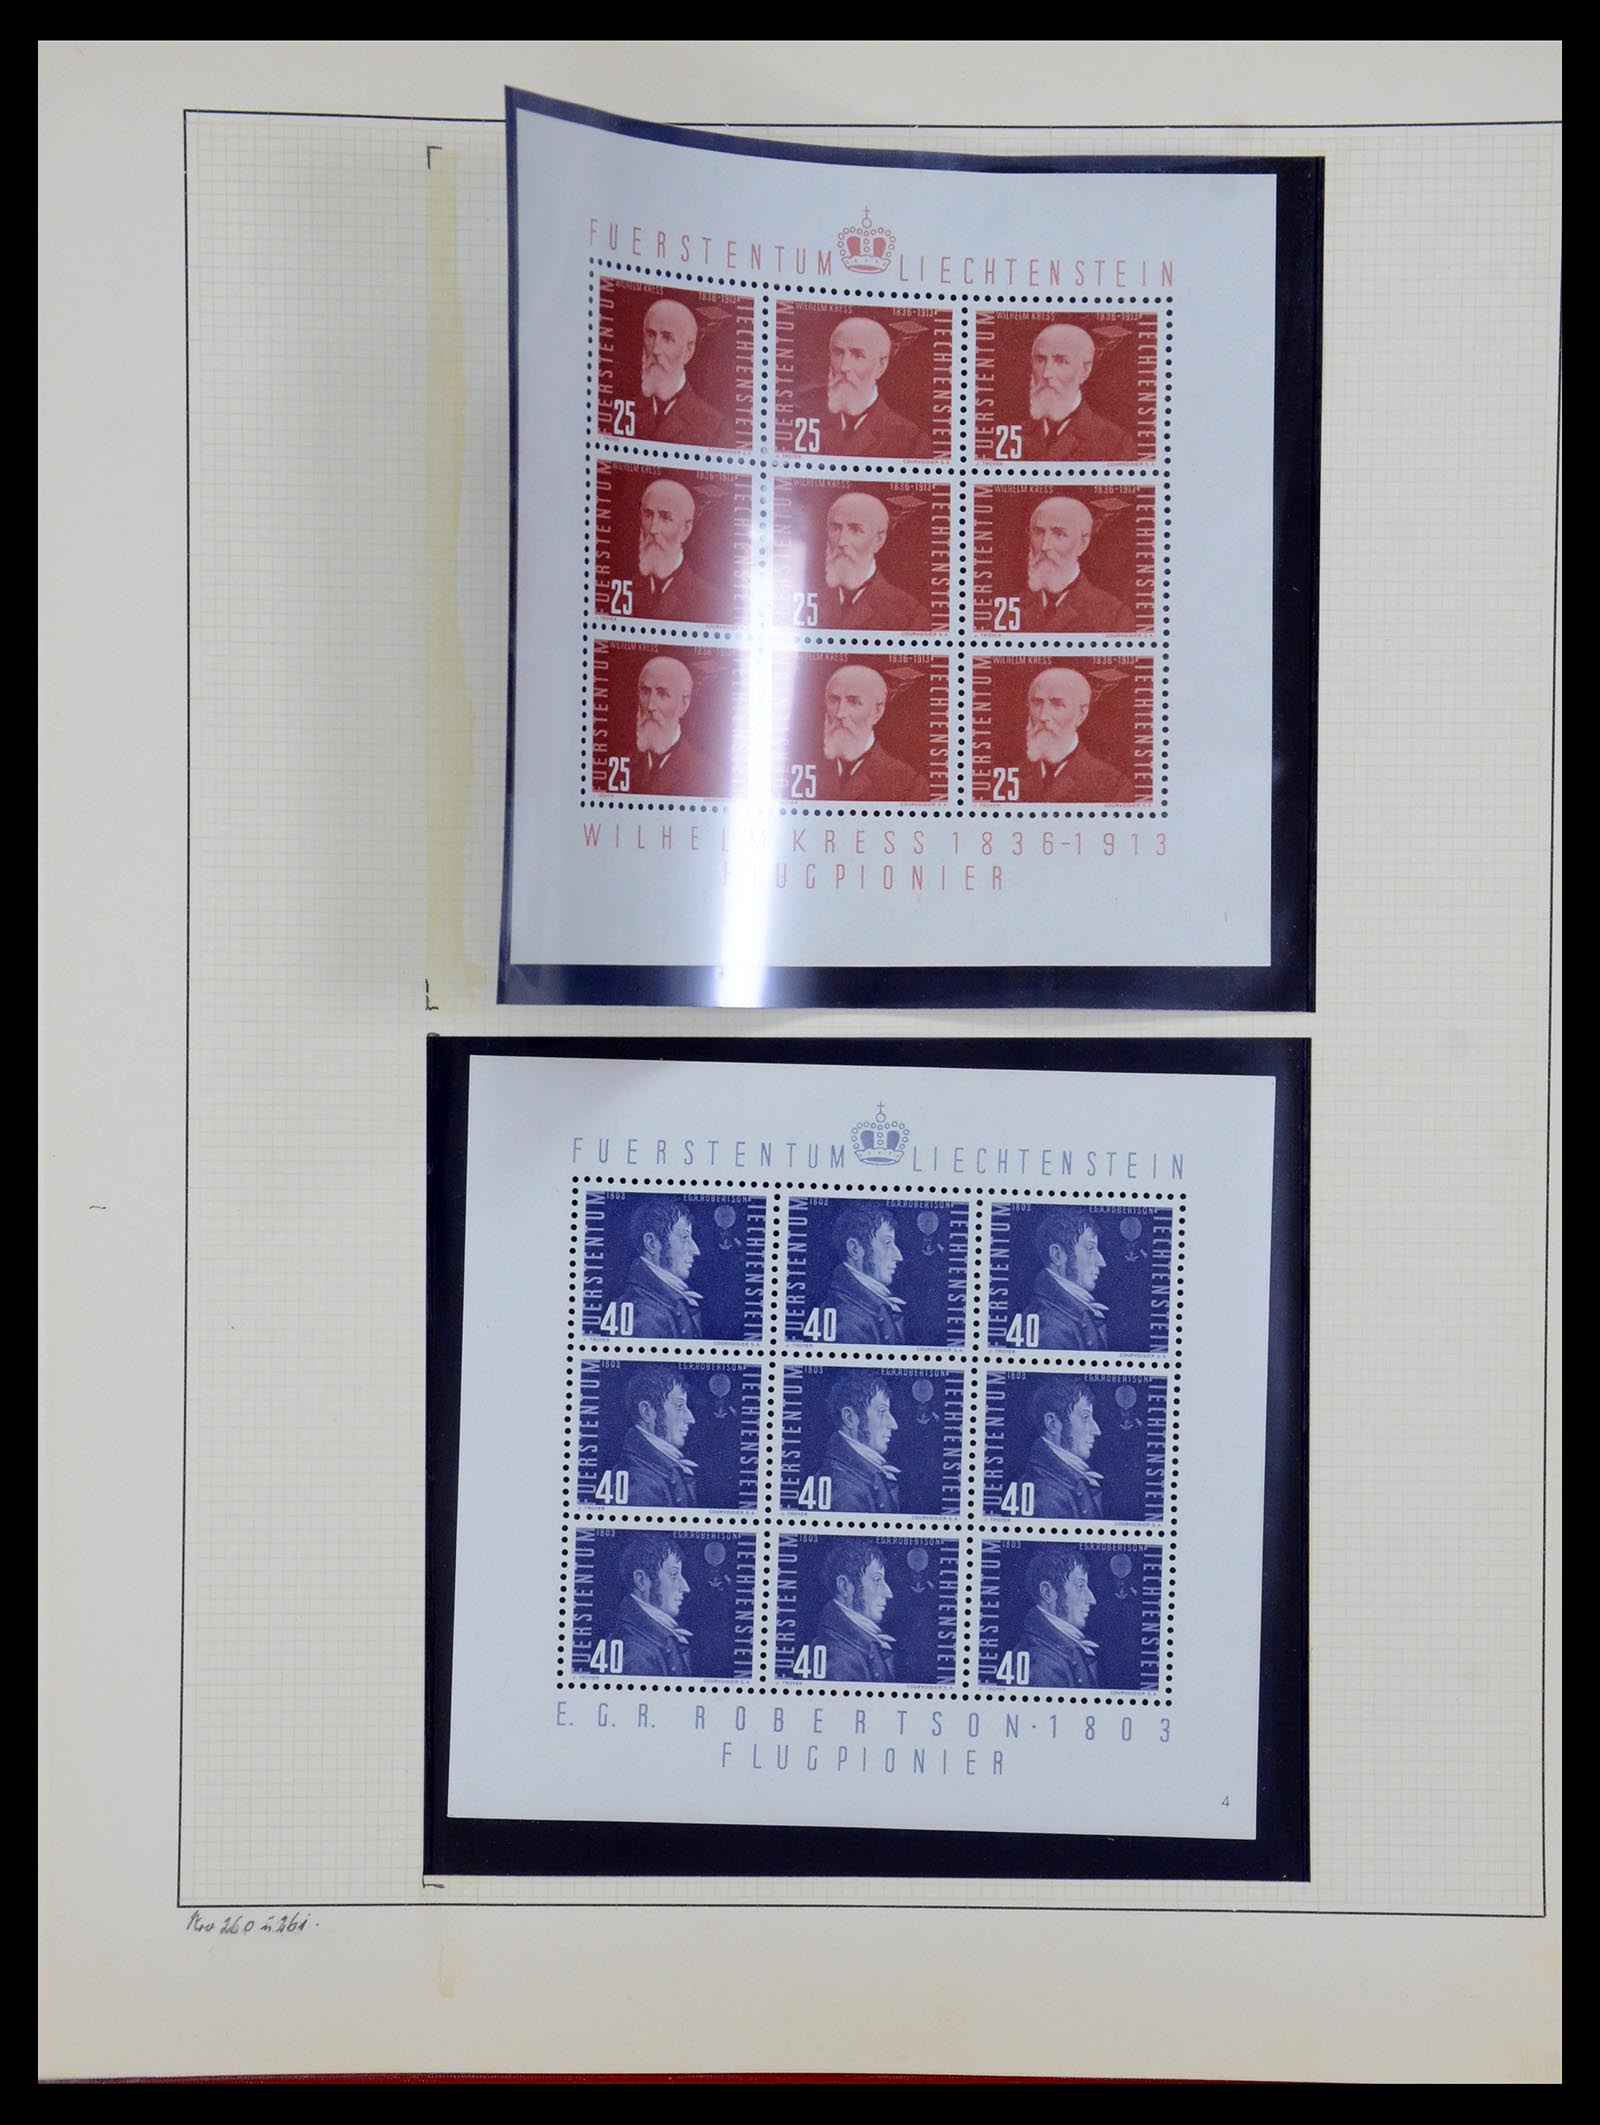 36280 057 - Stamp collection 36280 Liechtenstein souvenir sheets and sheetlets 1934-